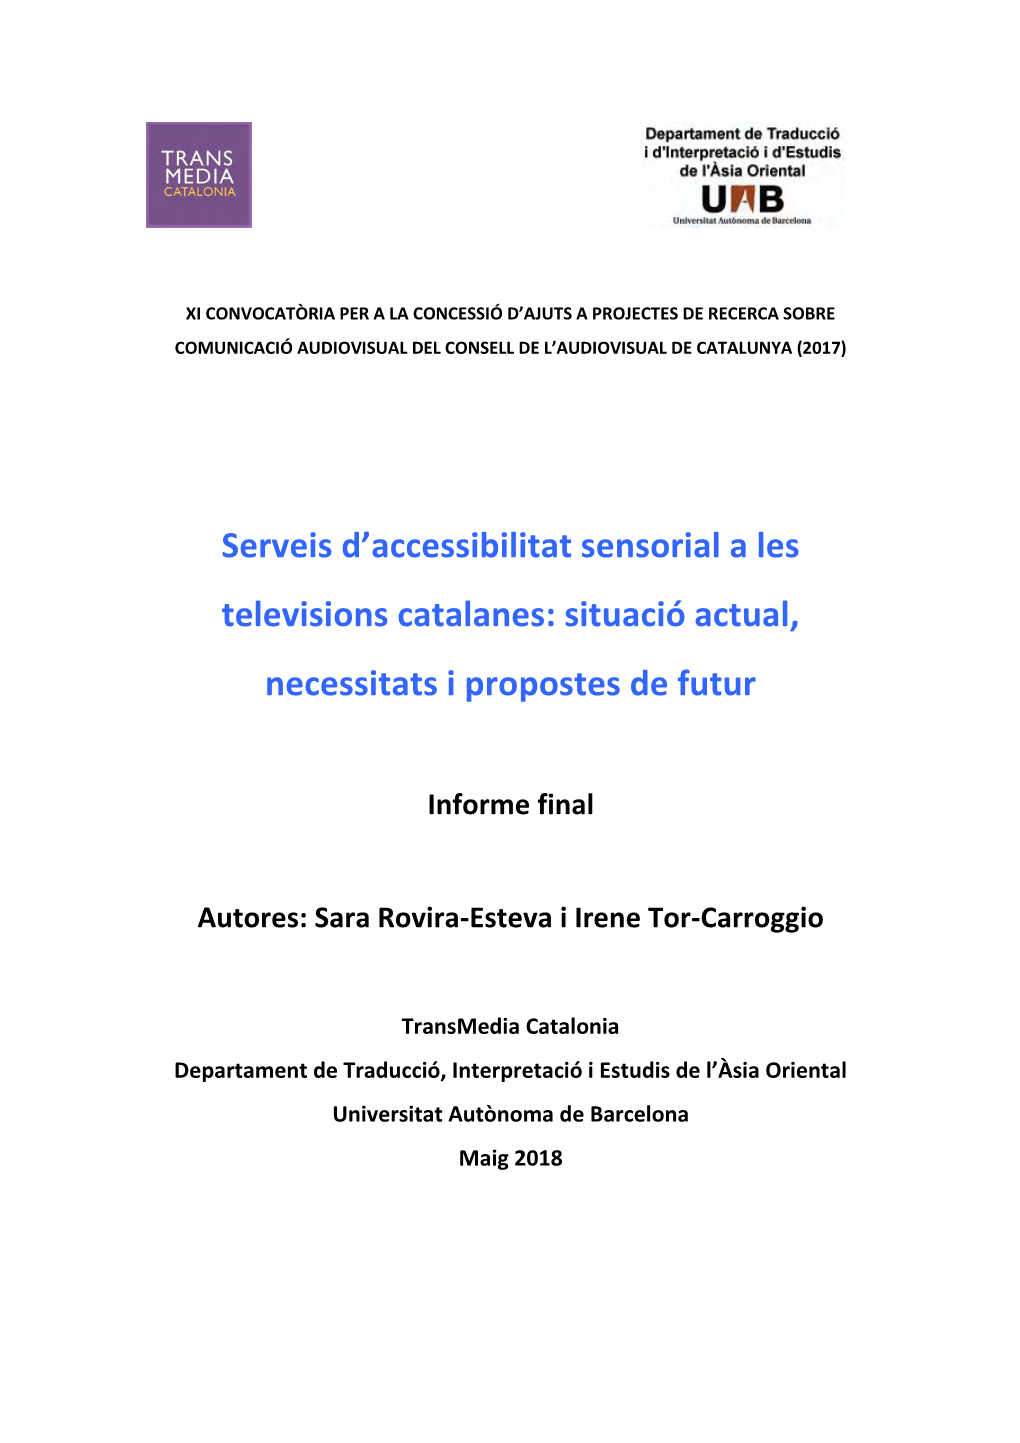 Serveis D'accessibilitat Sensorial a Les Televisions Catalanes